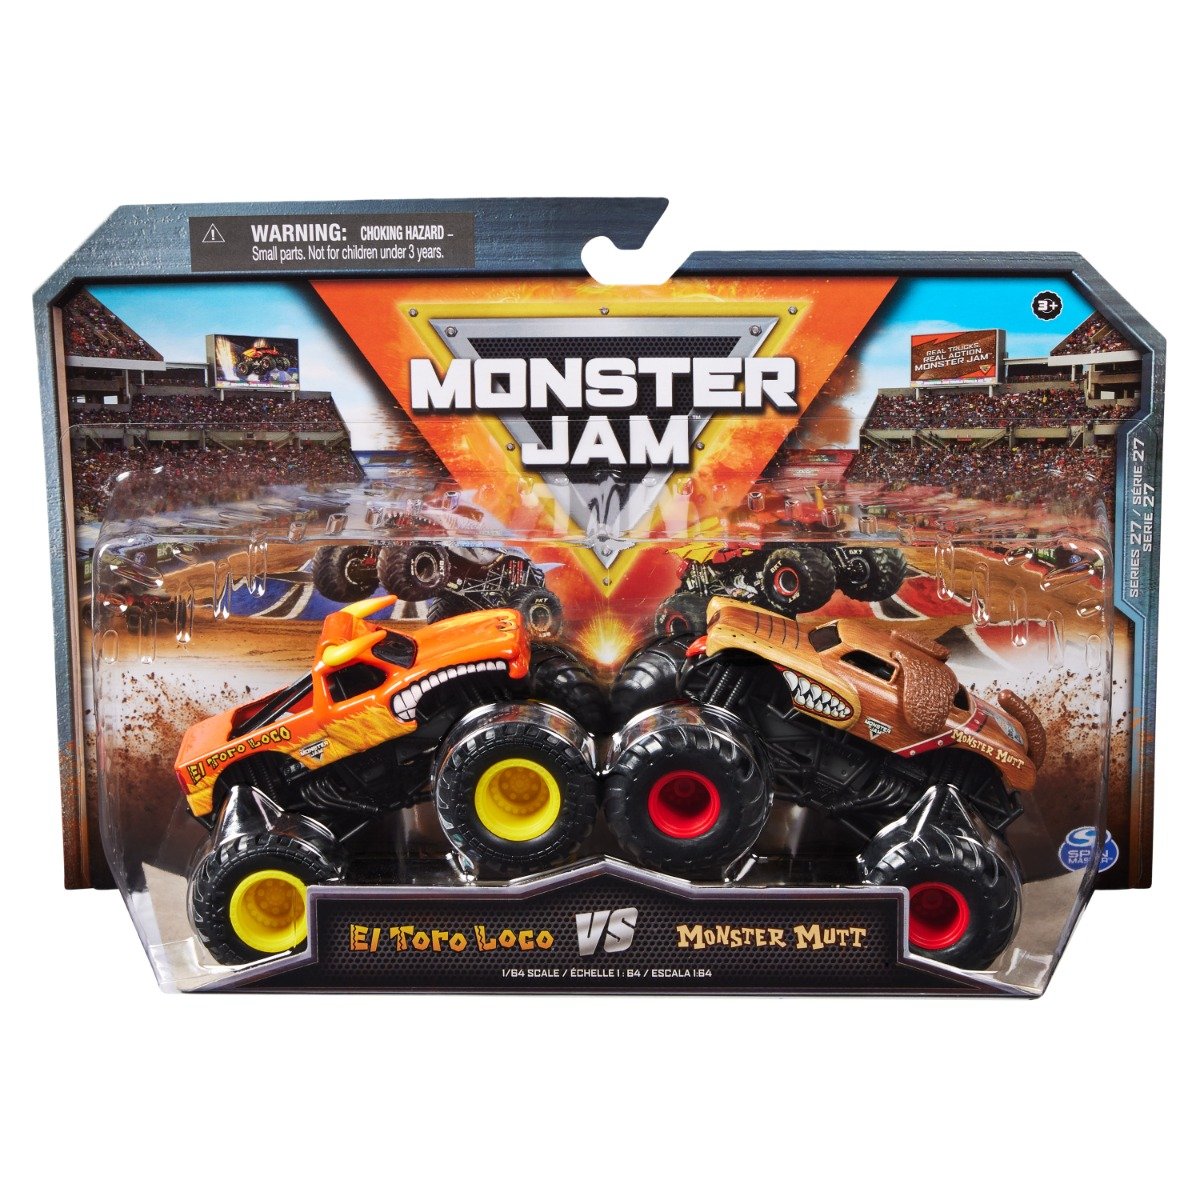 Set 2 masini, Monster Jam, El Toro Loco Vs Monster Mutt, 1:64, 20144307